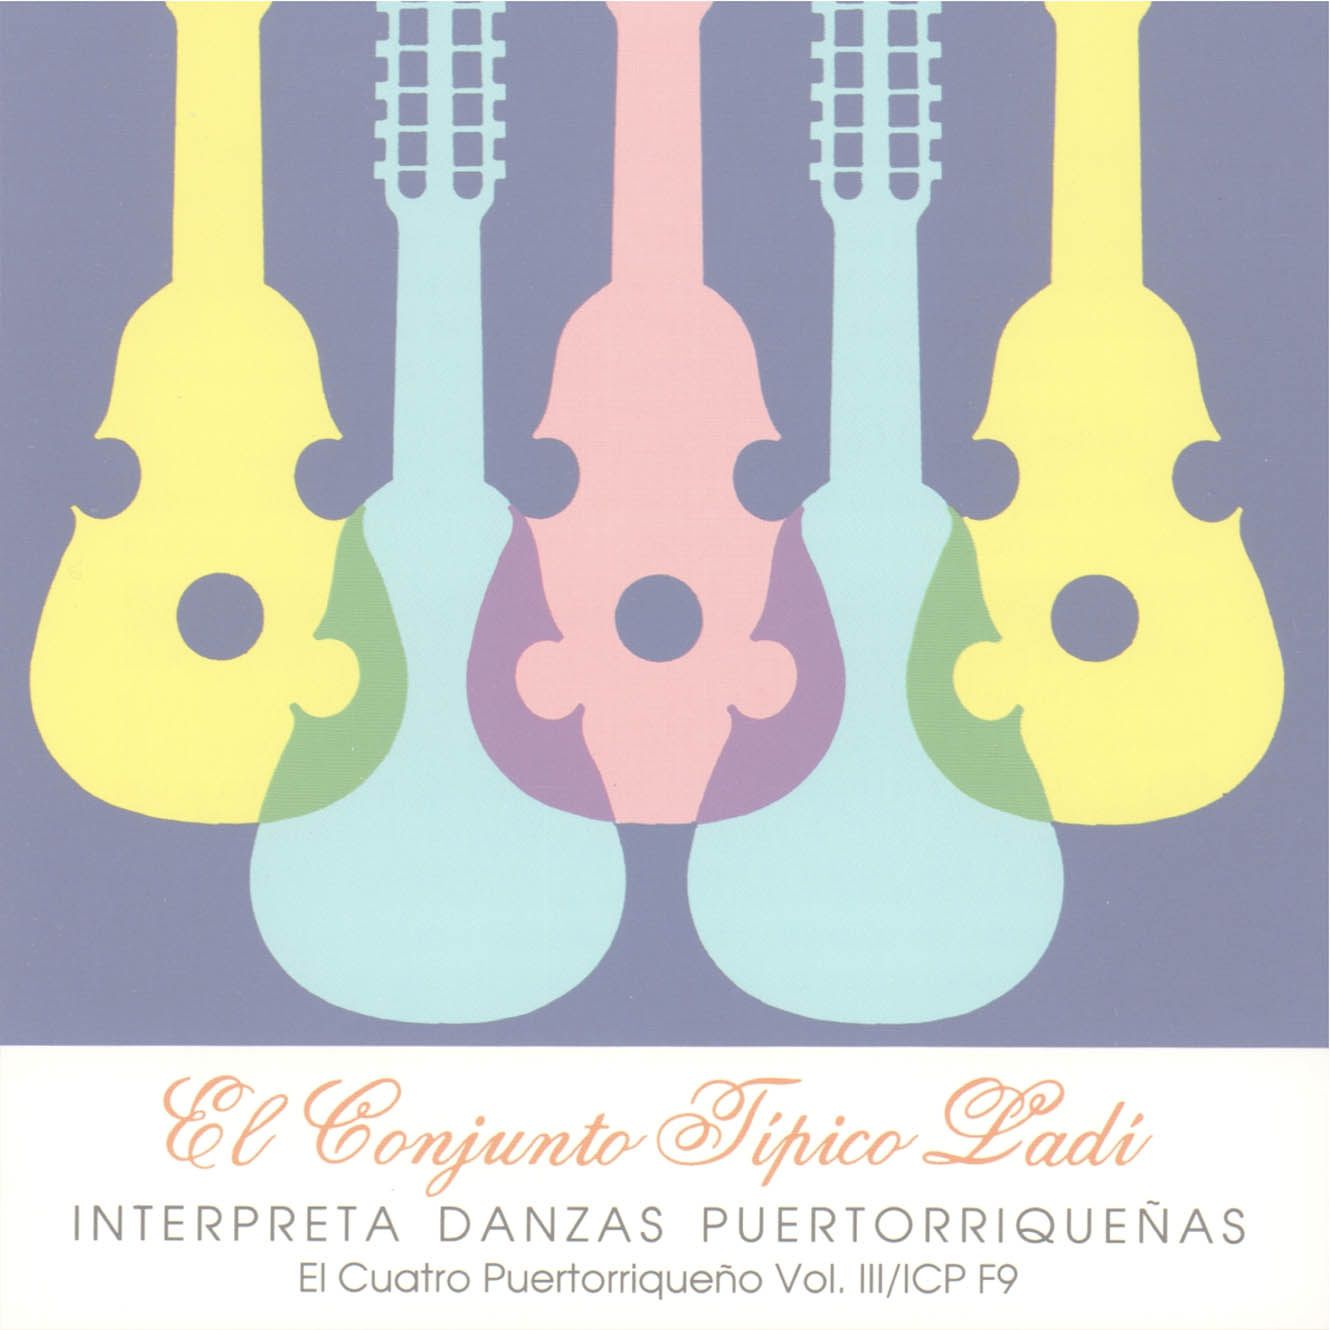 El Cuatro Puertorriqueño Vol. 3: El Conjunto Típico Ladí interpreta Danzas Puertorriqueñas